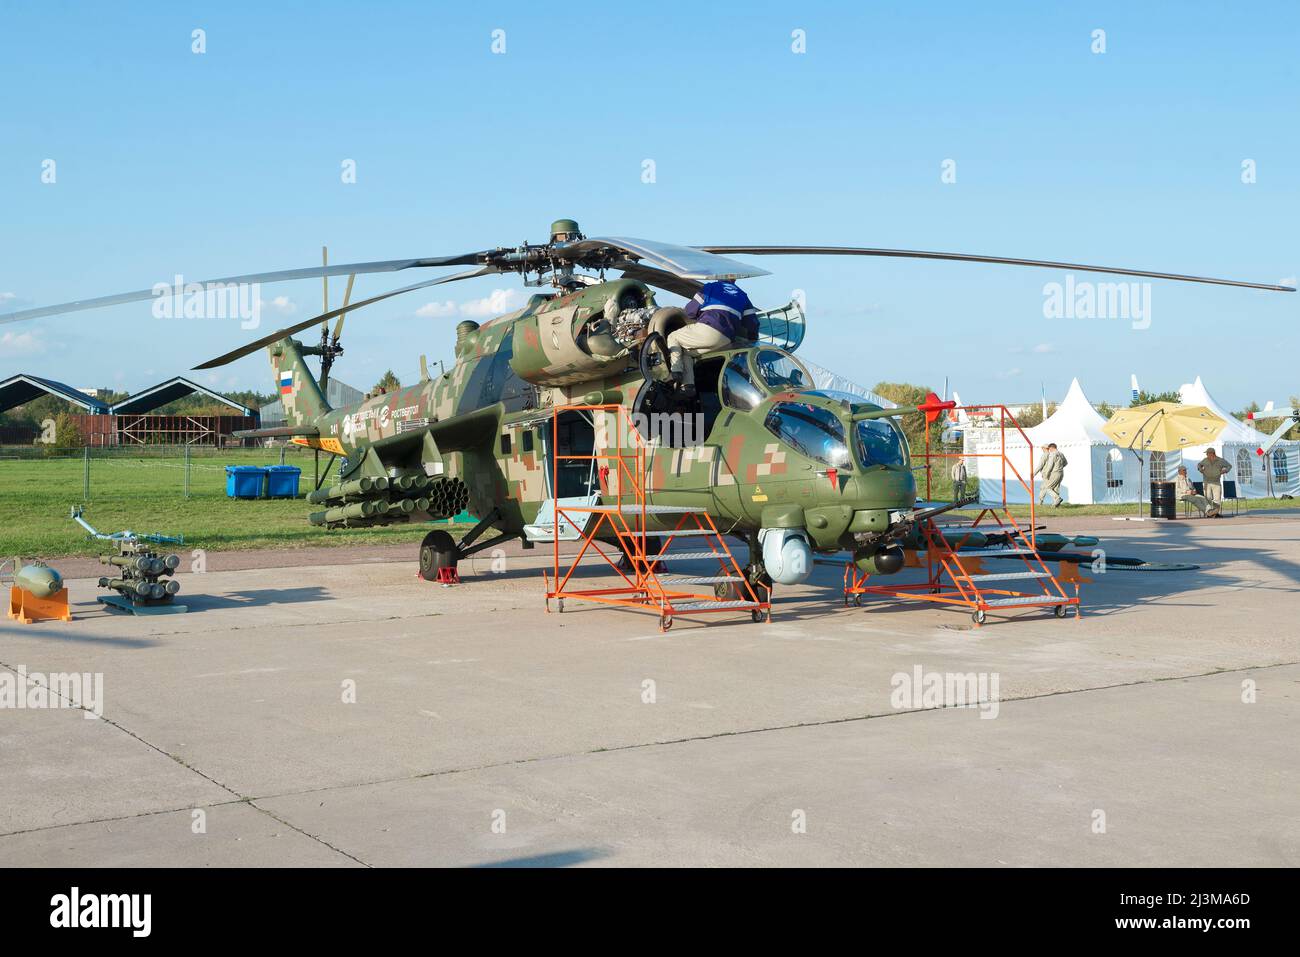 SCHUKOWSKI, RUSSLAND - 30. AUGUST 2019: Mi-35m ist ein russischer Transport- und Kampfhubschrauber, der rund um die Uhr auf der Flugschau MAKS-2019 eingesetzt wird Stockfoto